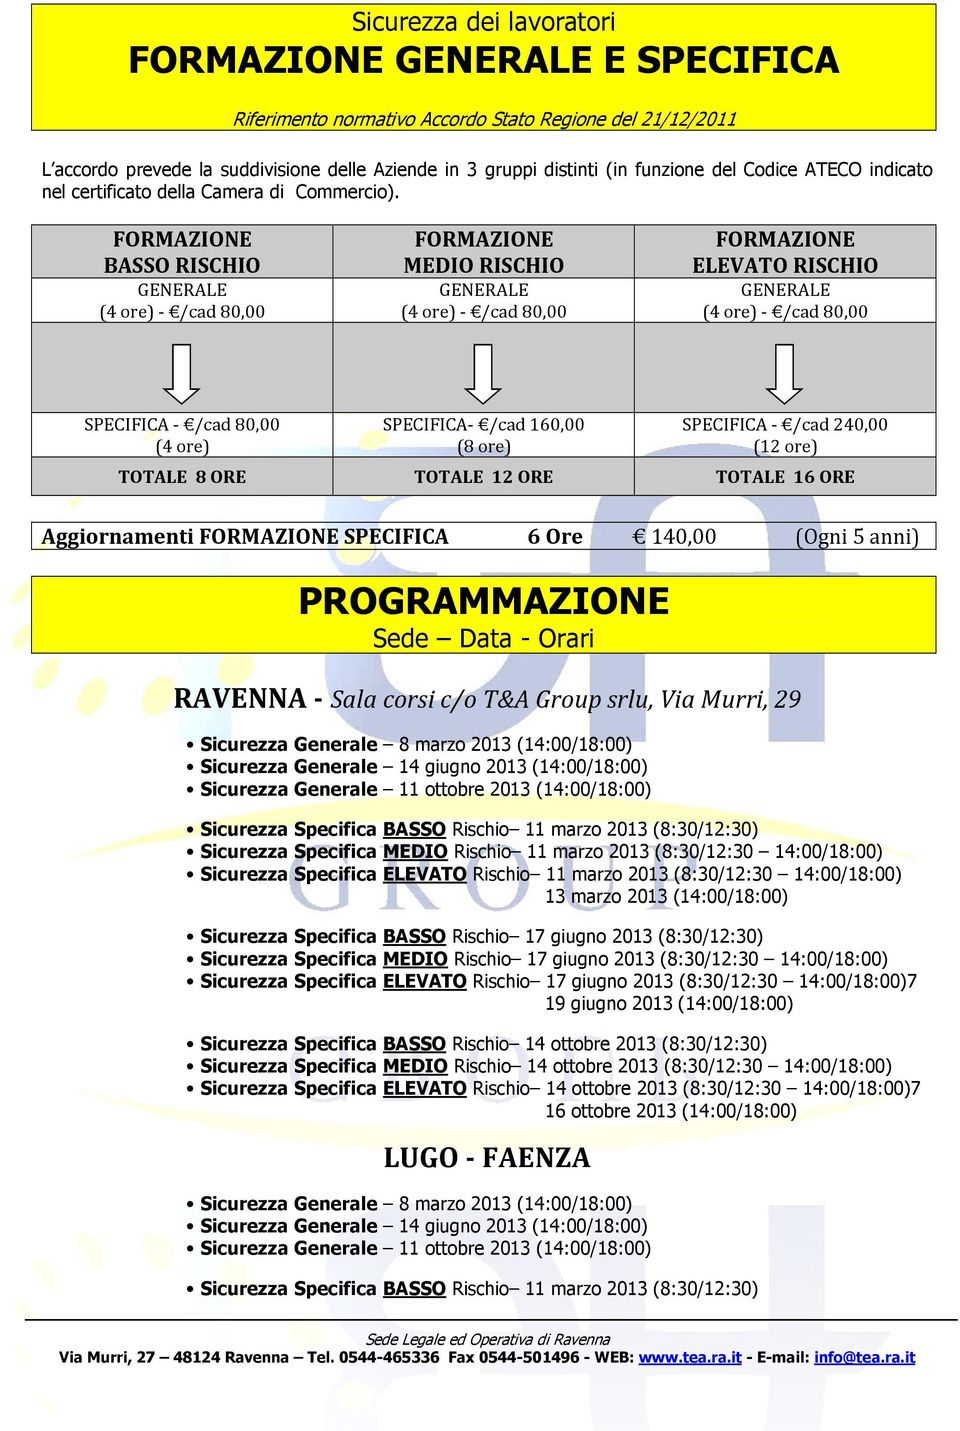 FORMAZIONE BASSO RISCHIO FORMAZIONE MEDIO RISCHIO FORMAZIONE ELEVATO RISCHIO GENERALE (4 re) - /cad 80,00 GENERALE (4 re) - /cad 80,00 GENERALE (4 re) - /cad 80,00 SPECIFICA - /cad 80,00 (4 re)